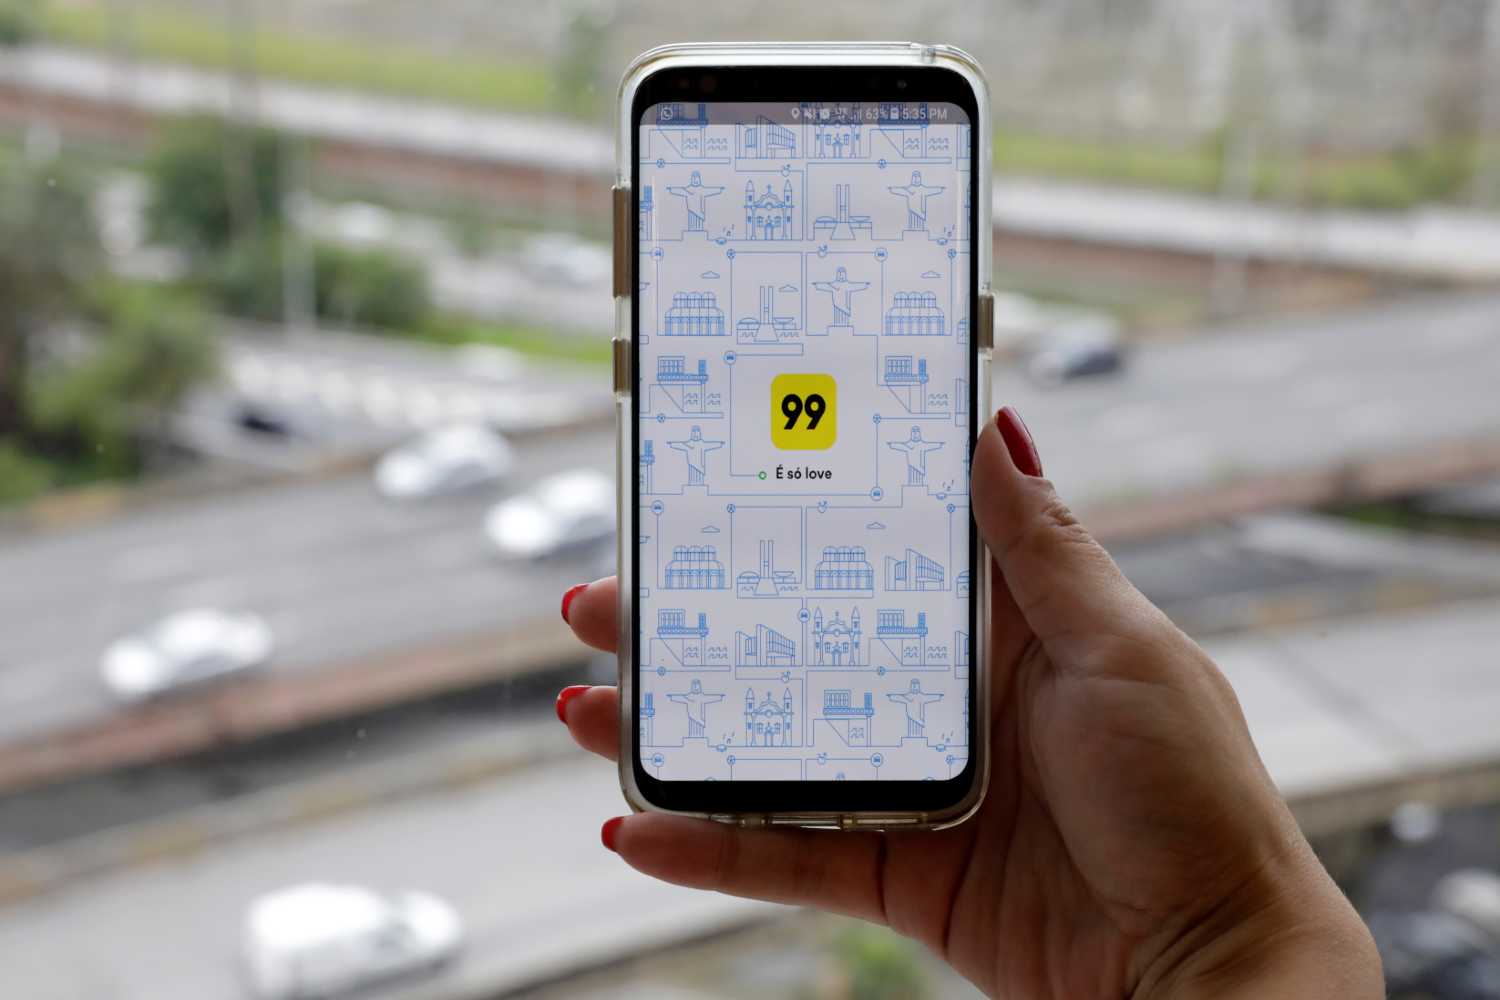 Mídia Car inova ao agregar tecnologia e métricas as campanhas carros de  aplicativo e Táxi - Portal NE9